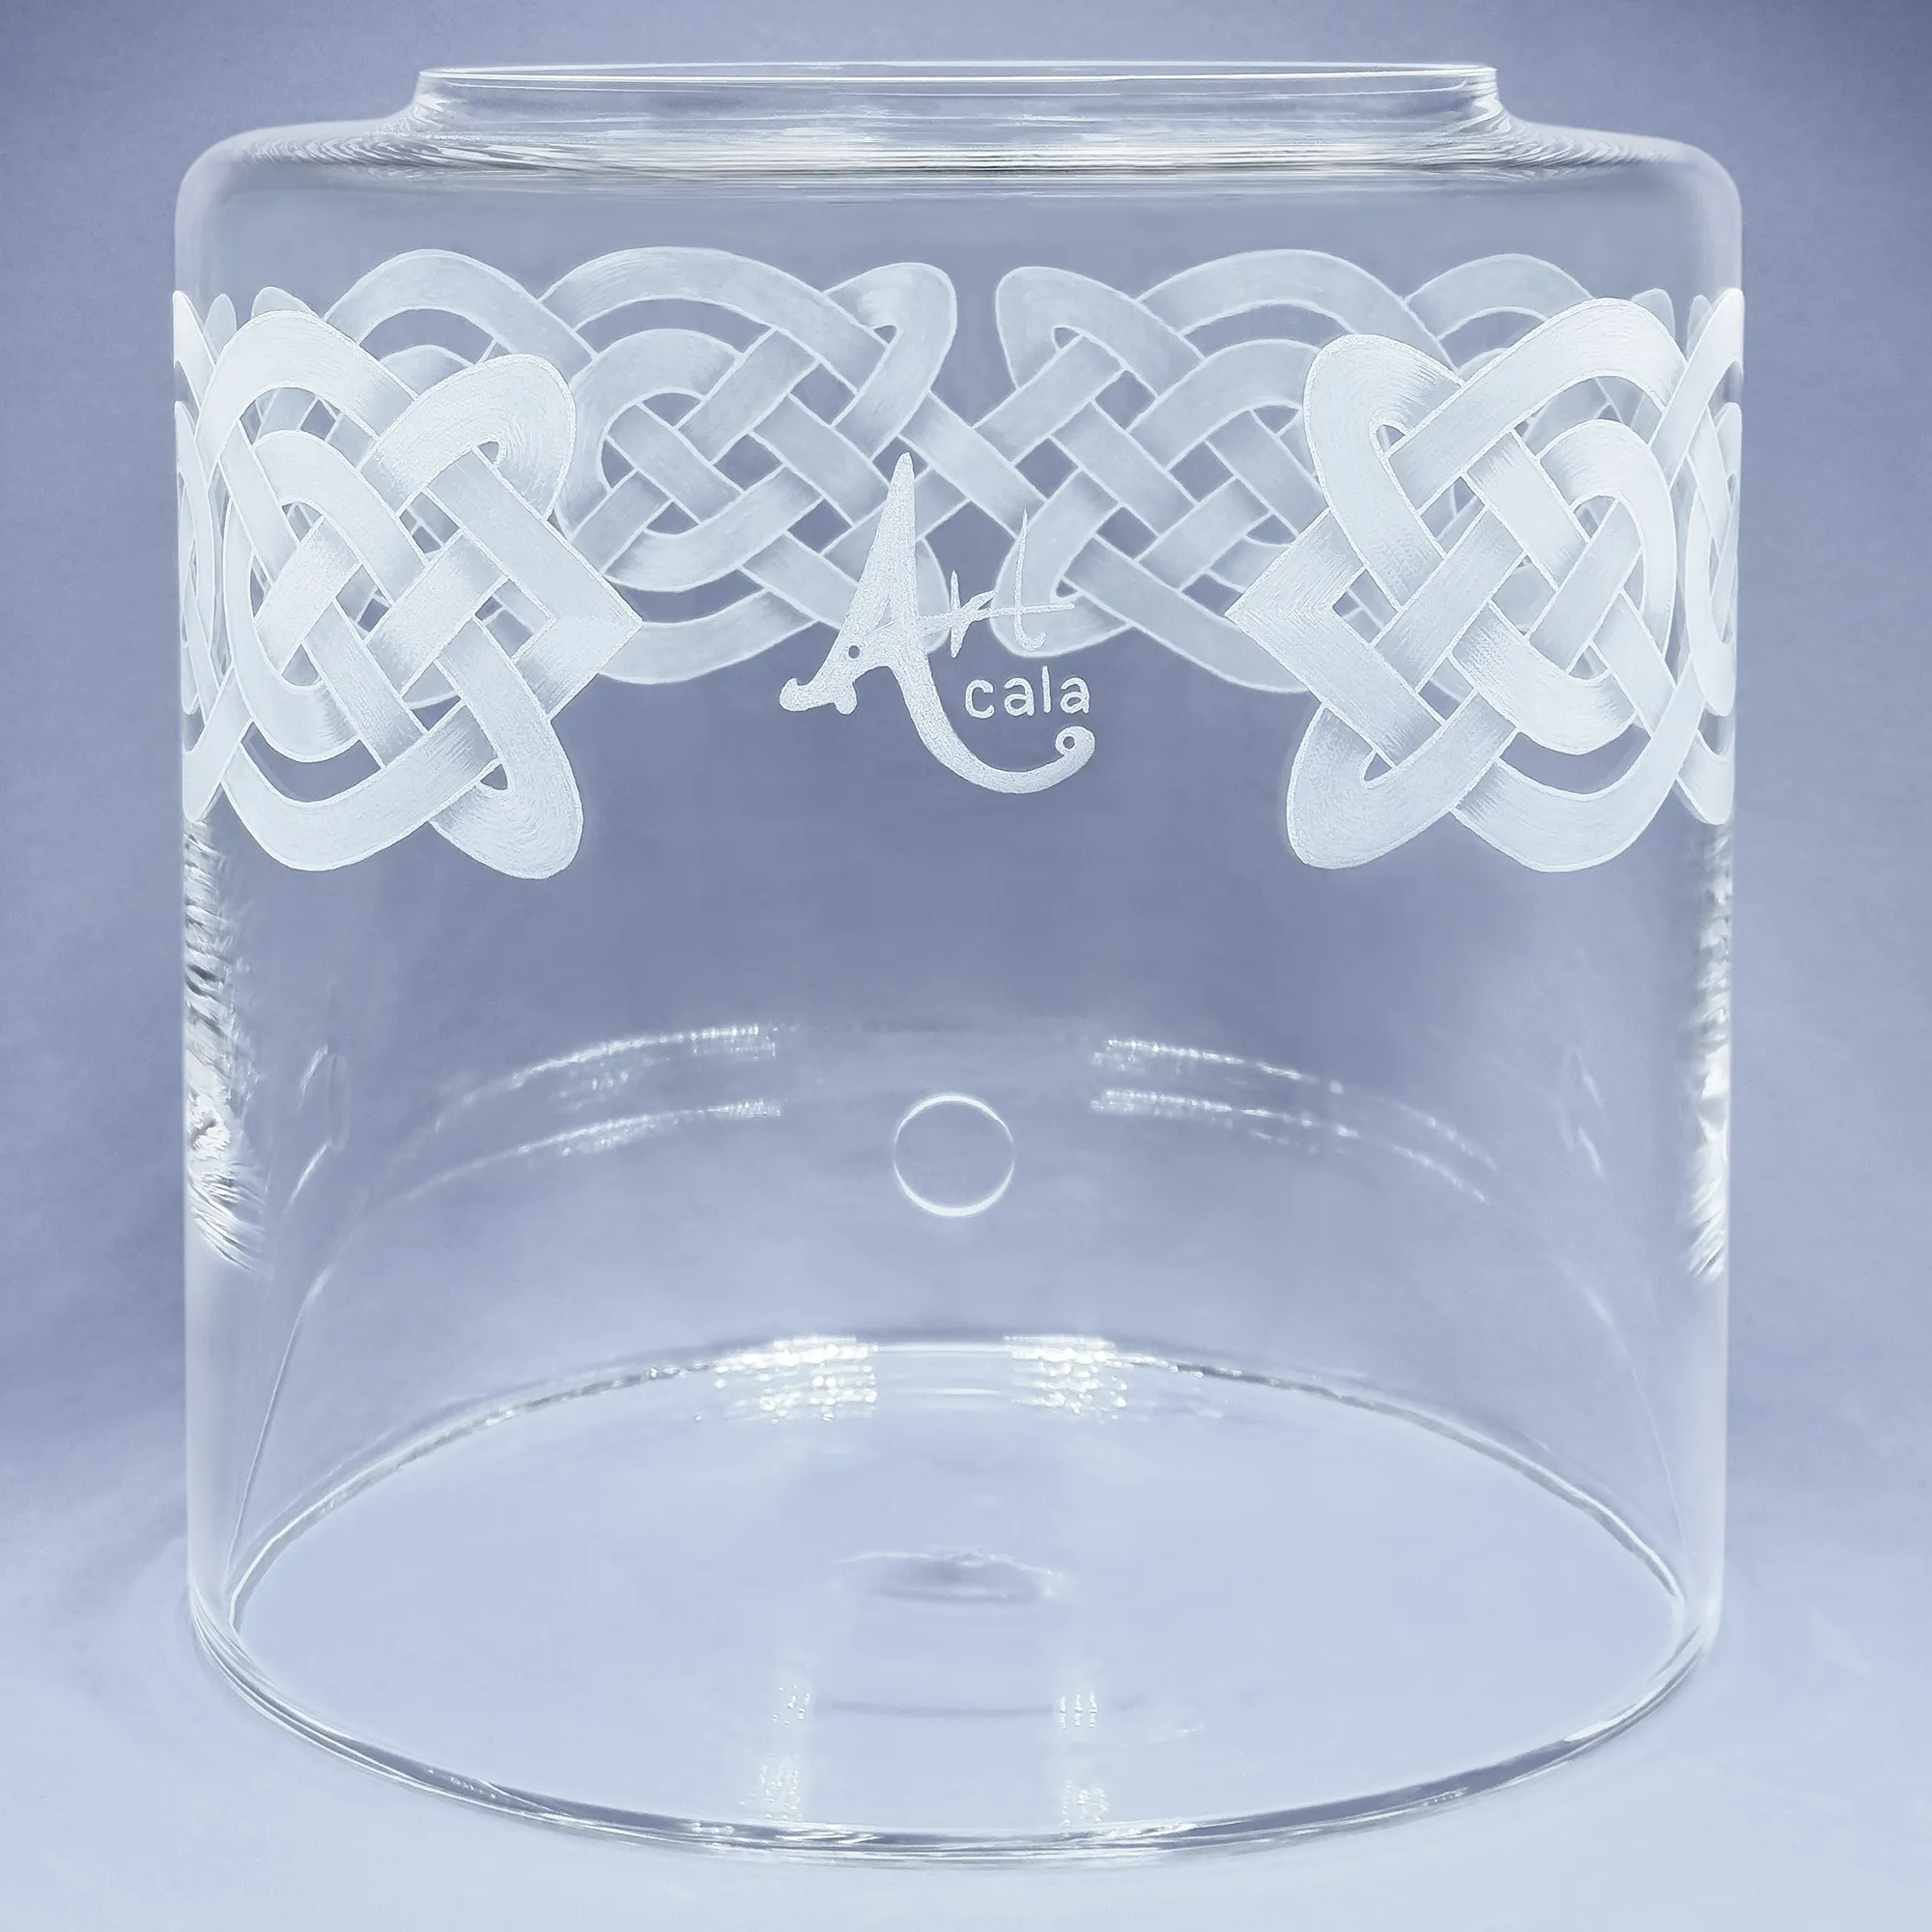 Vorratstank aus Glas für einen 8Liter Acala Wasserfilter in klarem Glas mit einem umlaufenden Muster aus Knoten,am oberen Rand des runden Glases. 